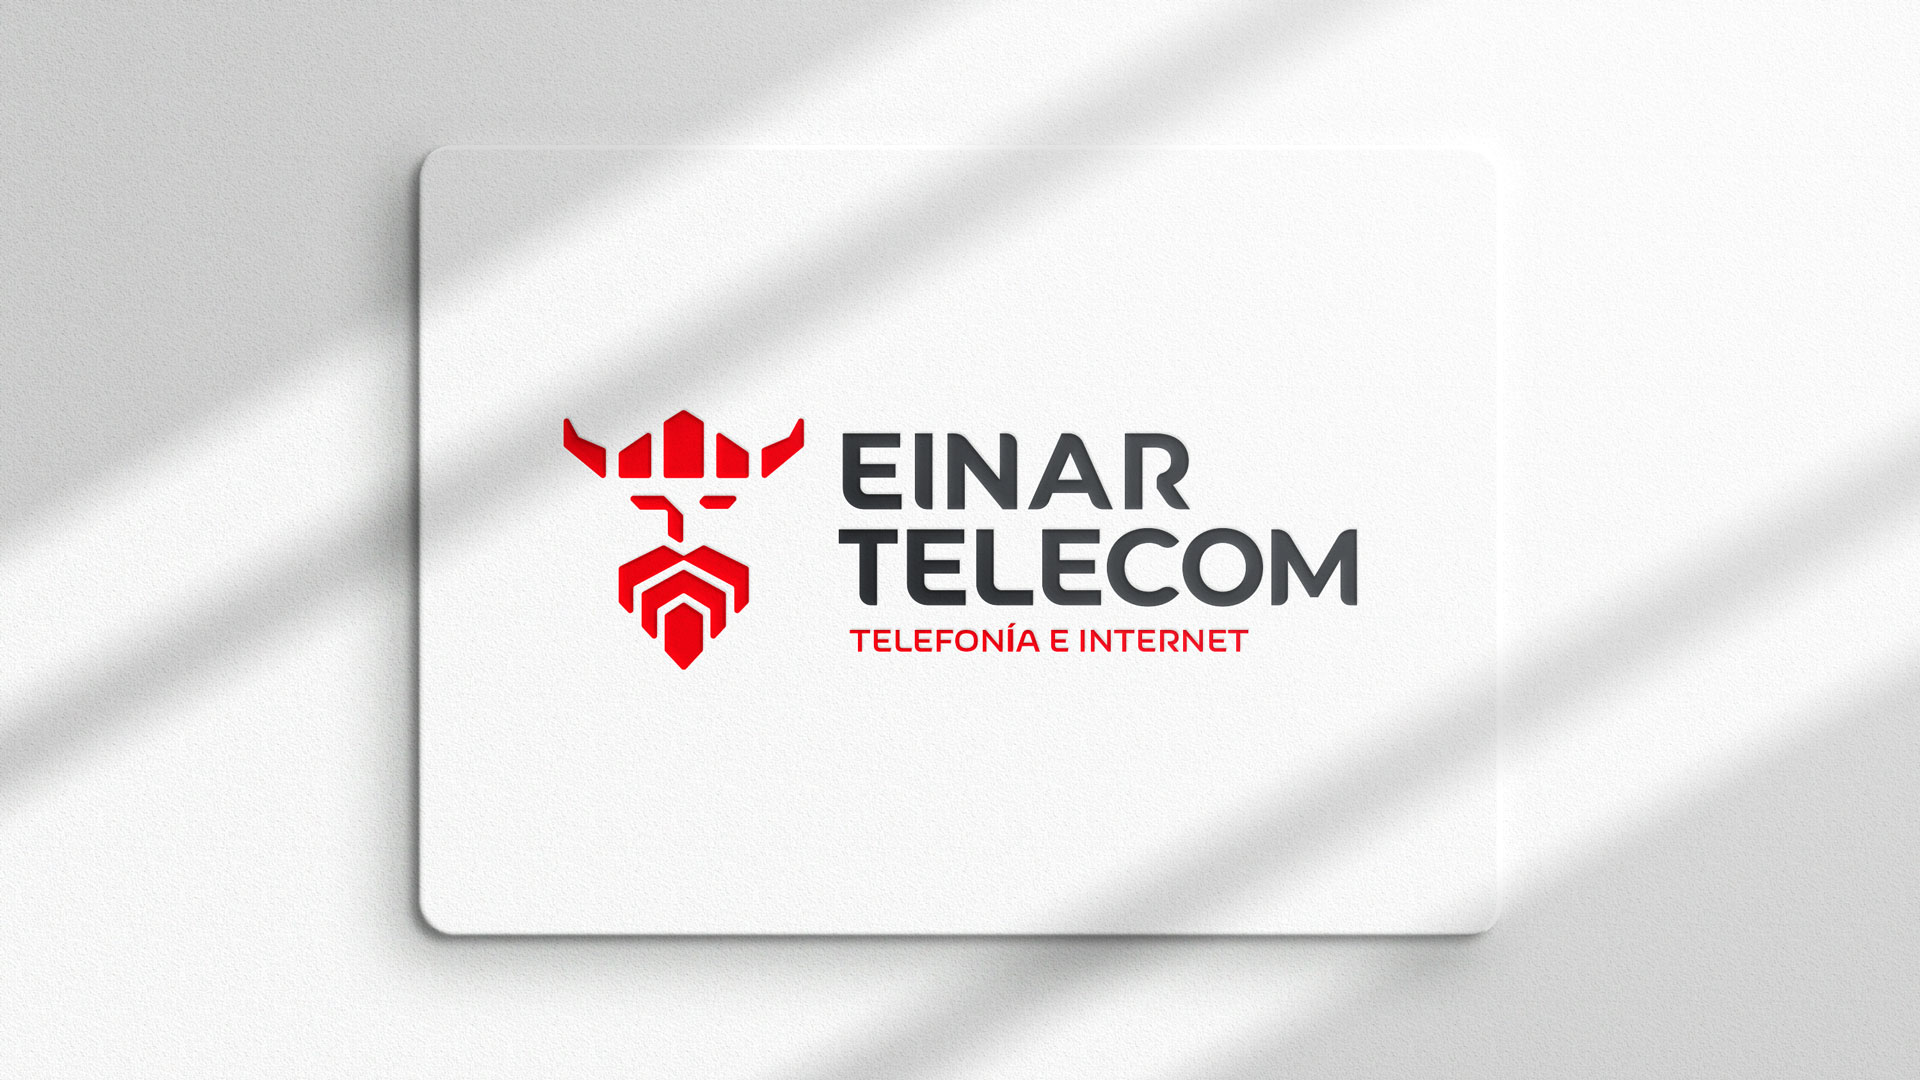 Einar Telecom